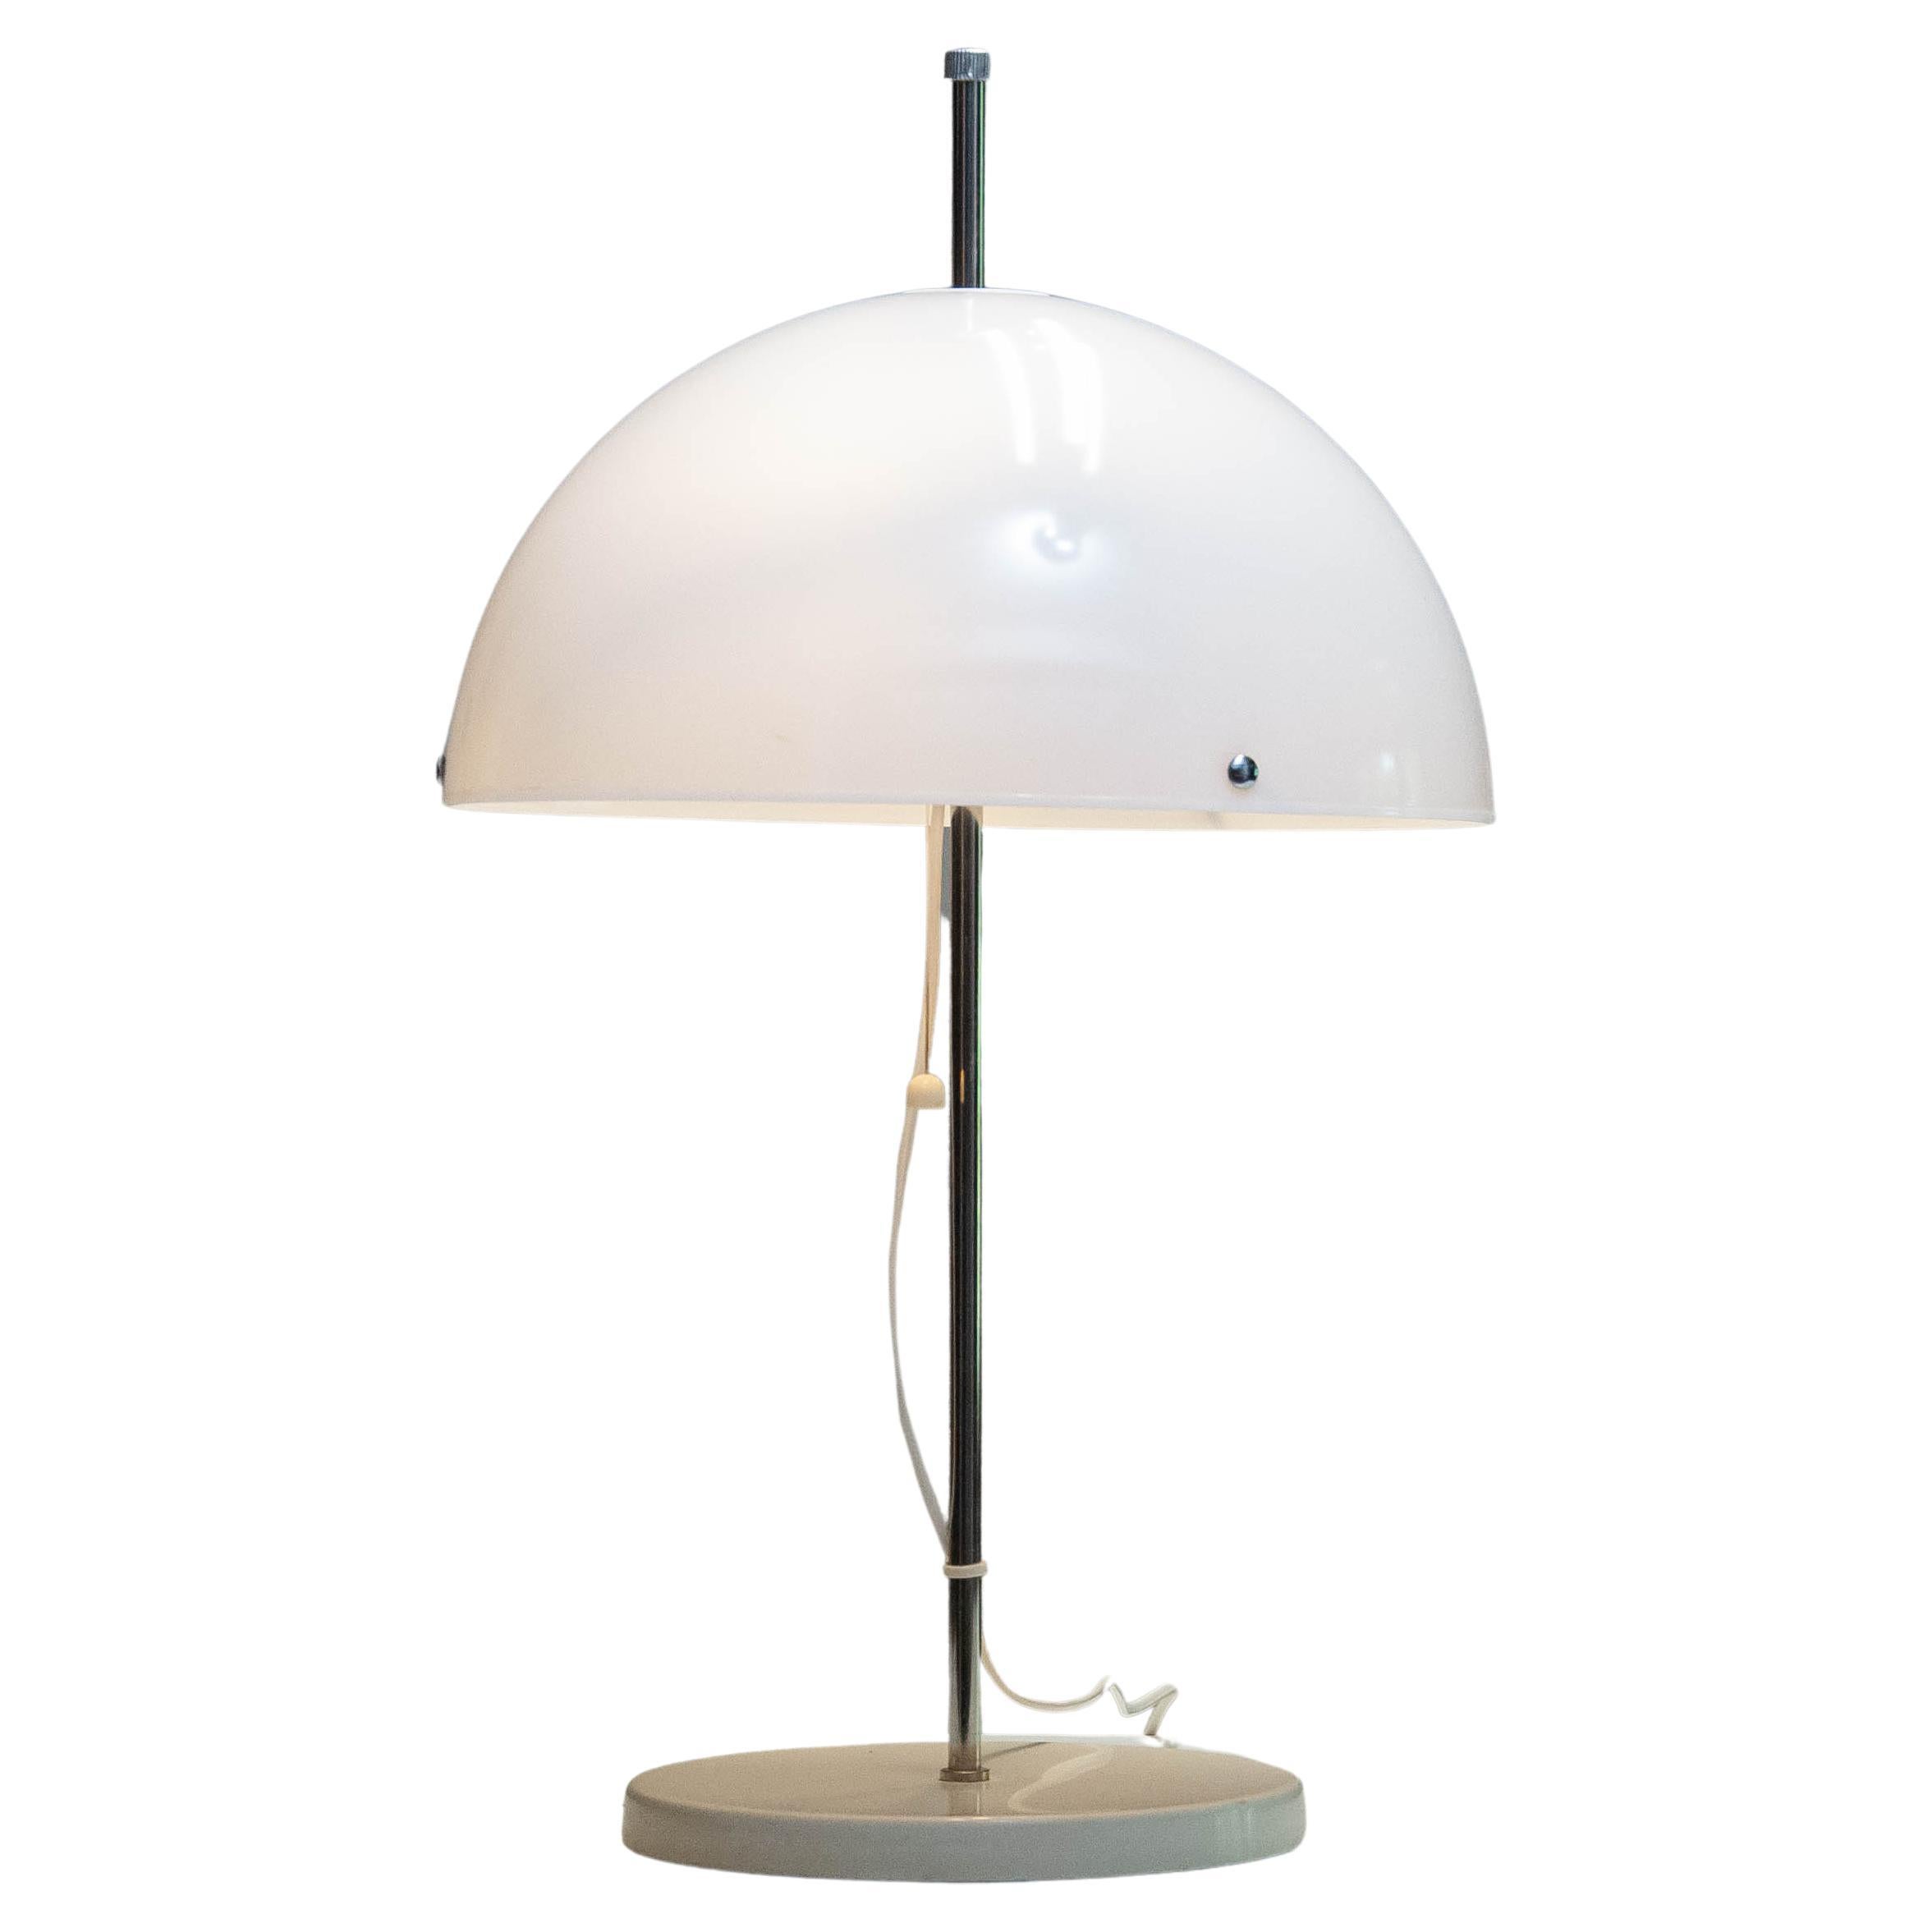 Lampe de table champignon en chrome et acrylique blanc des années 1970 fabriquée par Fagerhult, Suède